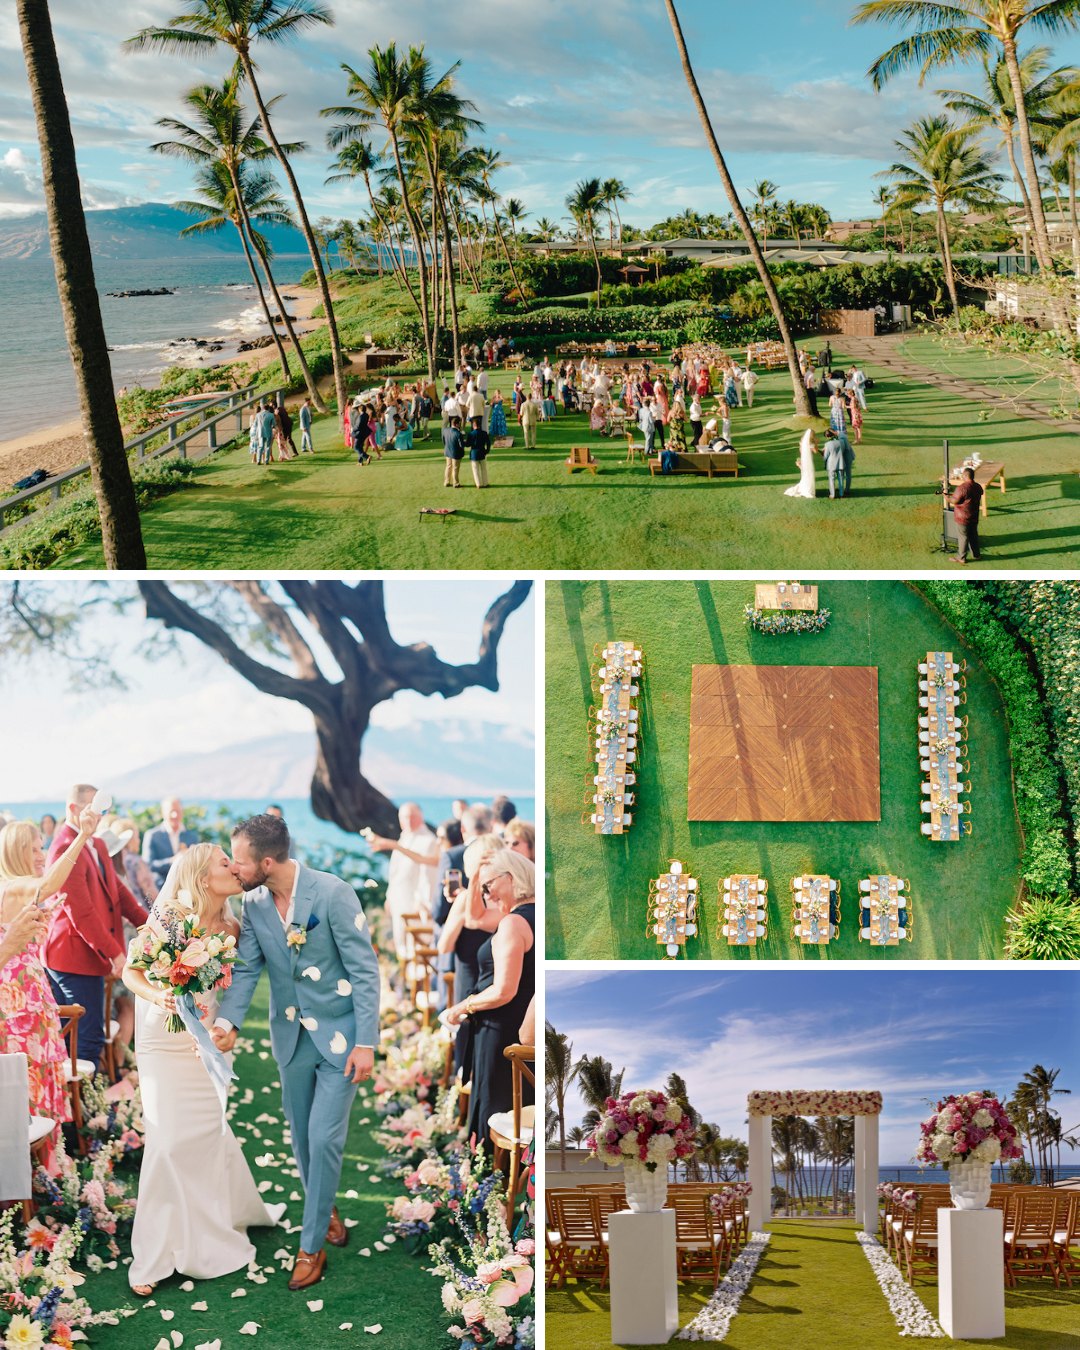 wedding ceremony setups and reception setups across various Andaz Maui event lawns